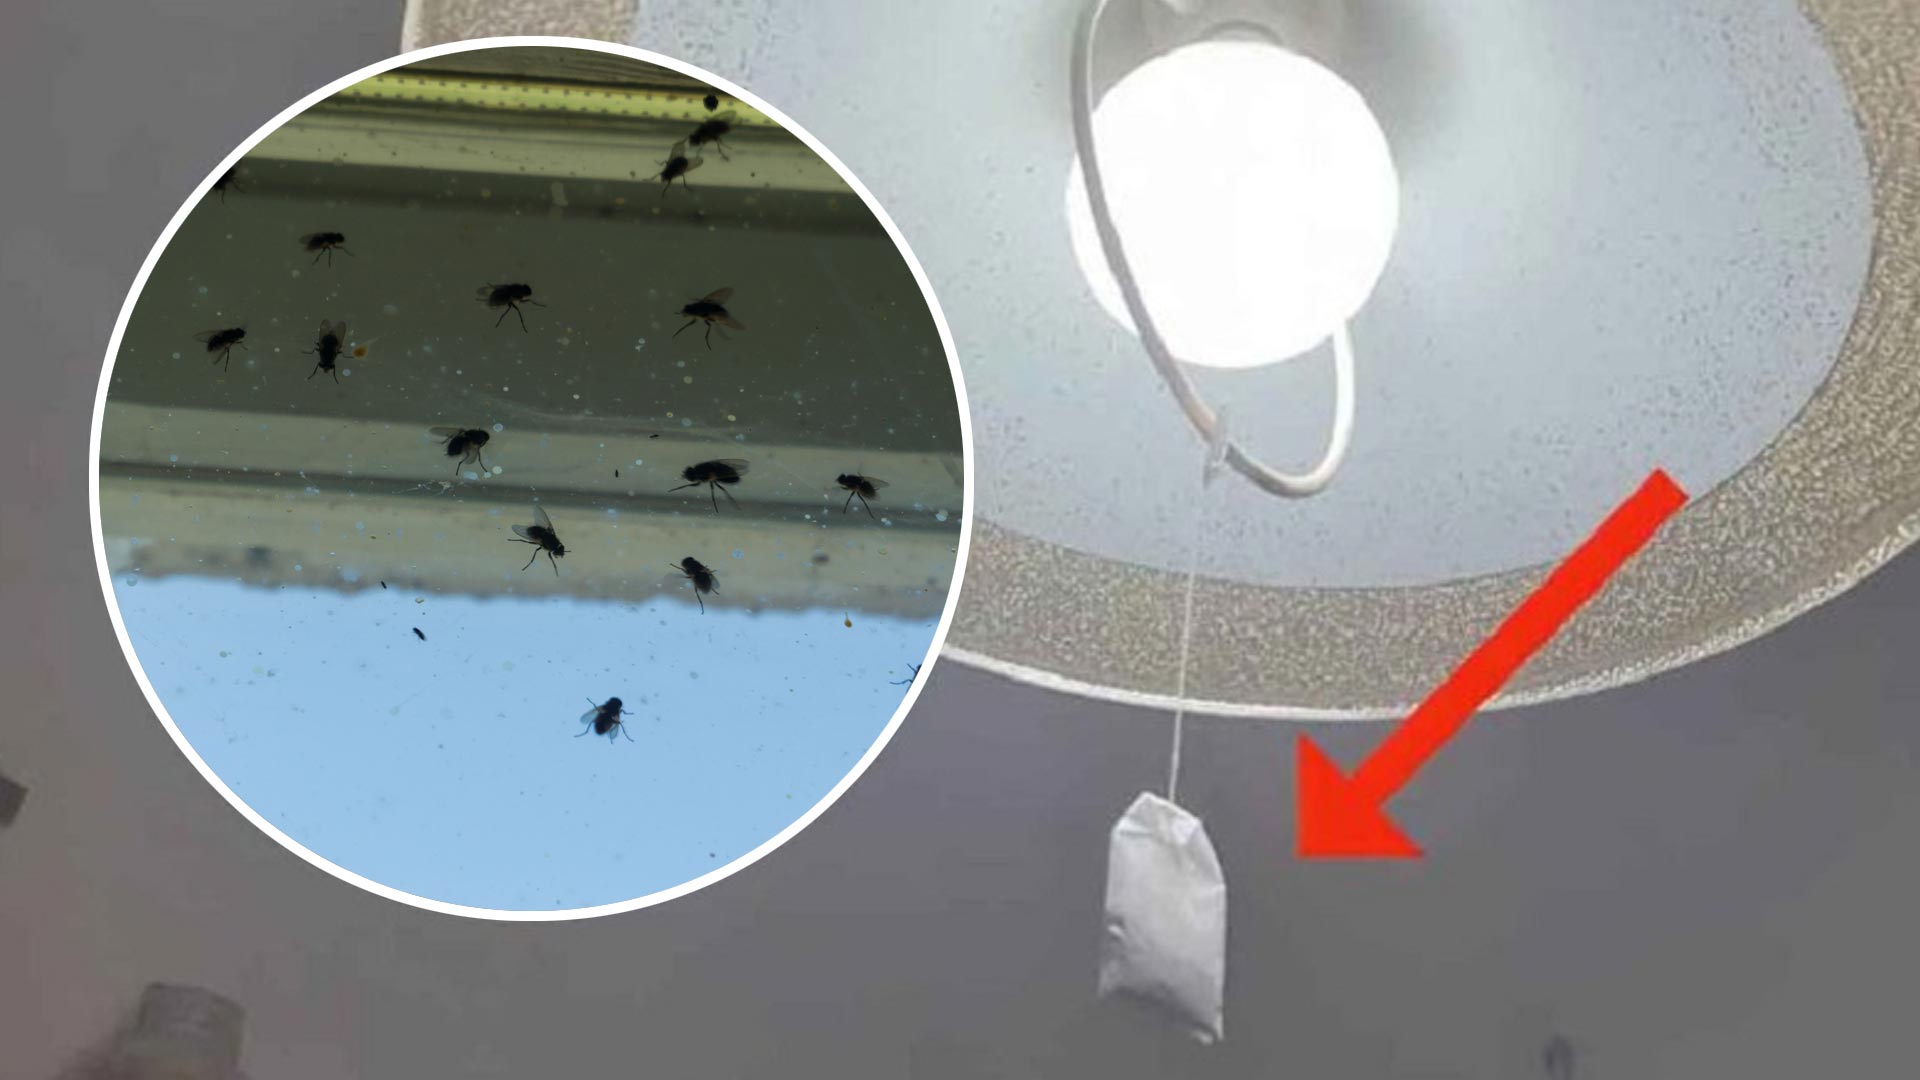 Τέλος στα μυγάκια που πετάνε μέσα στο σπίτι: Ένα φακελάκι τσαί κρεμασμένο στο φως θα κάνει τη δουλειά